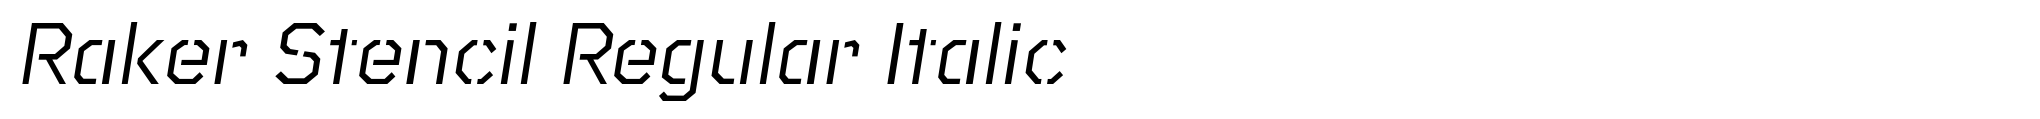 Raker Stencil Regular Italic image